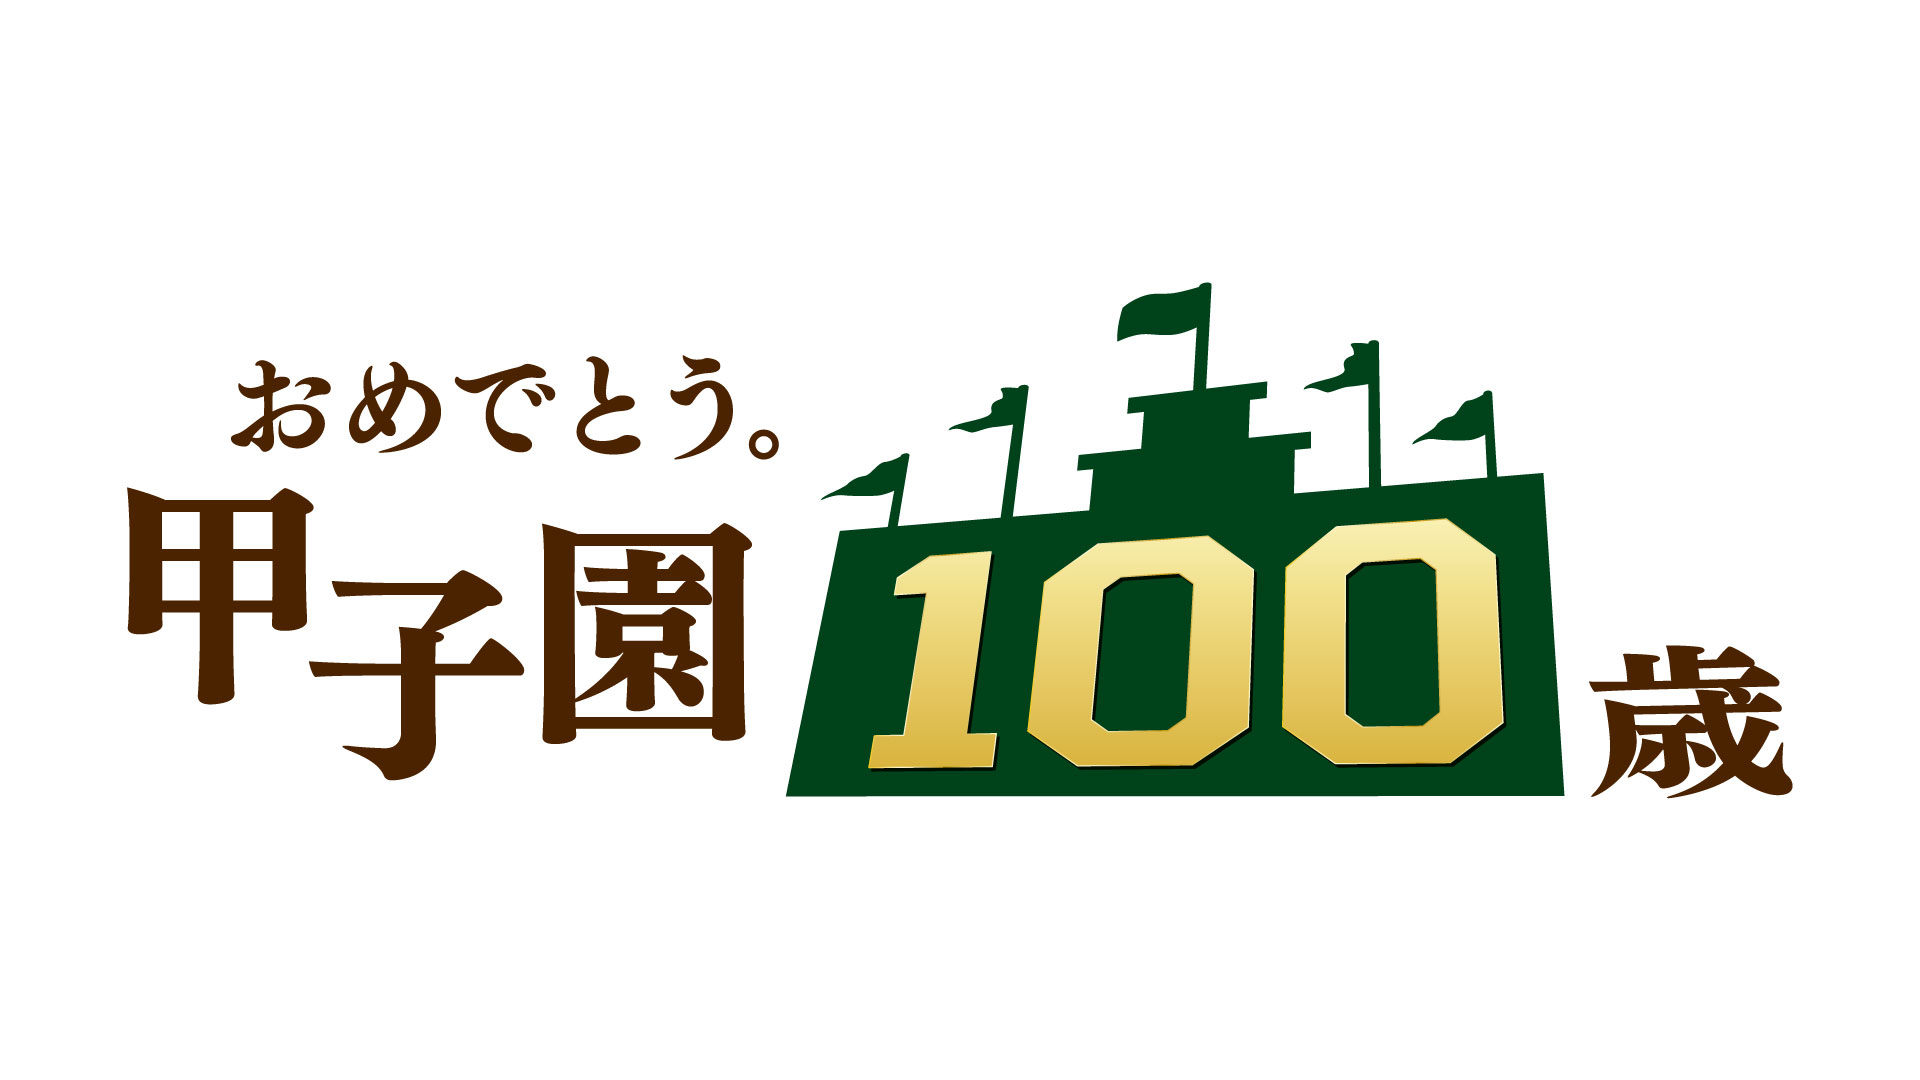 おめでとう。甲子園100歳